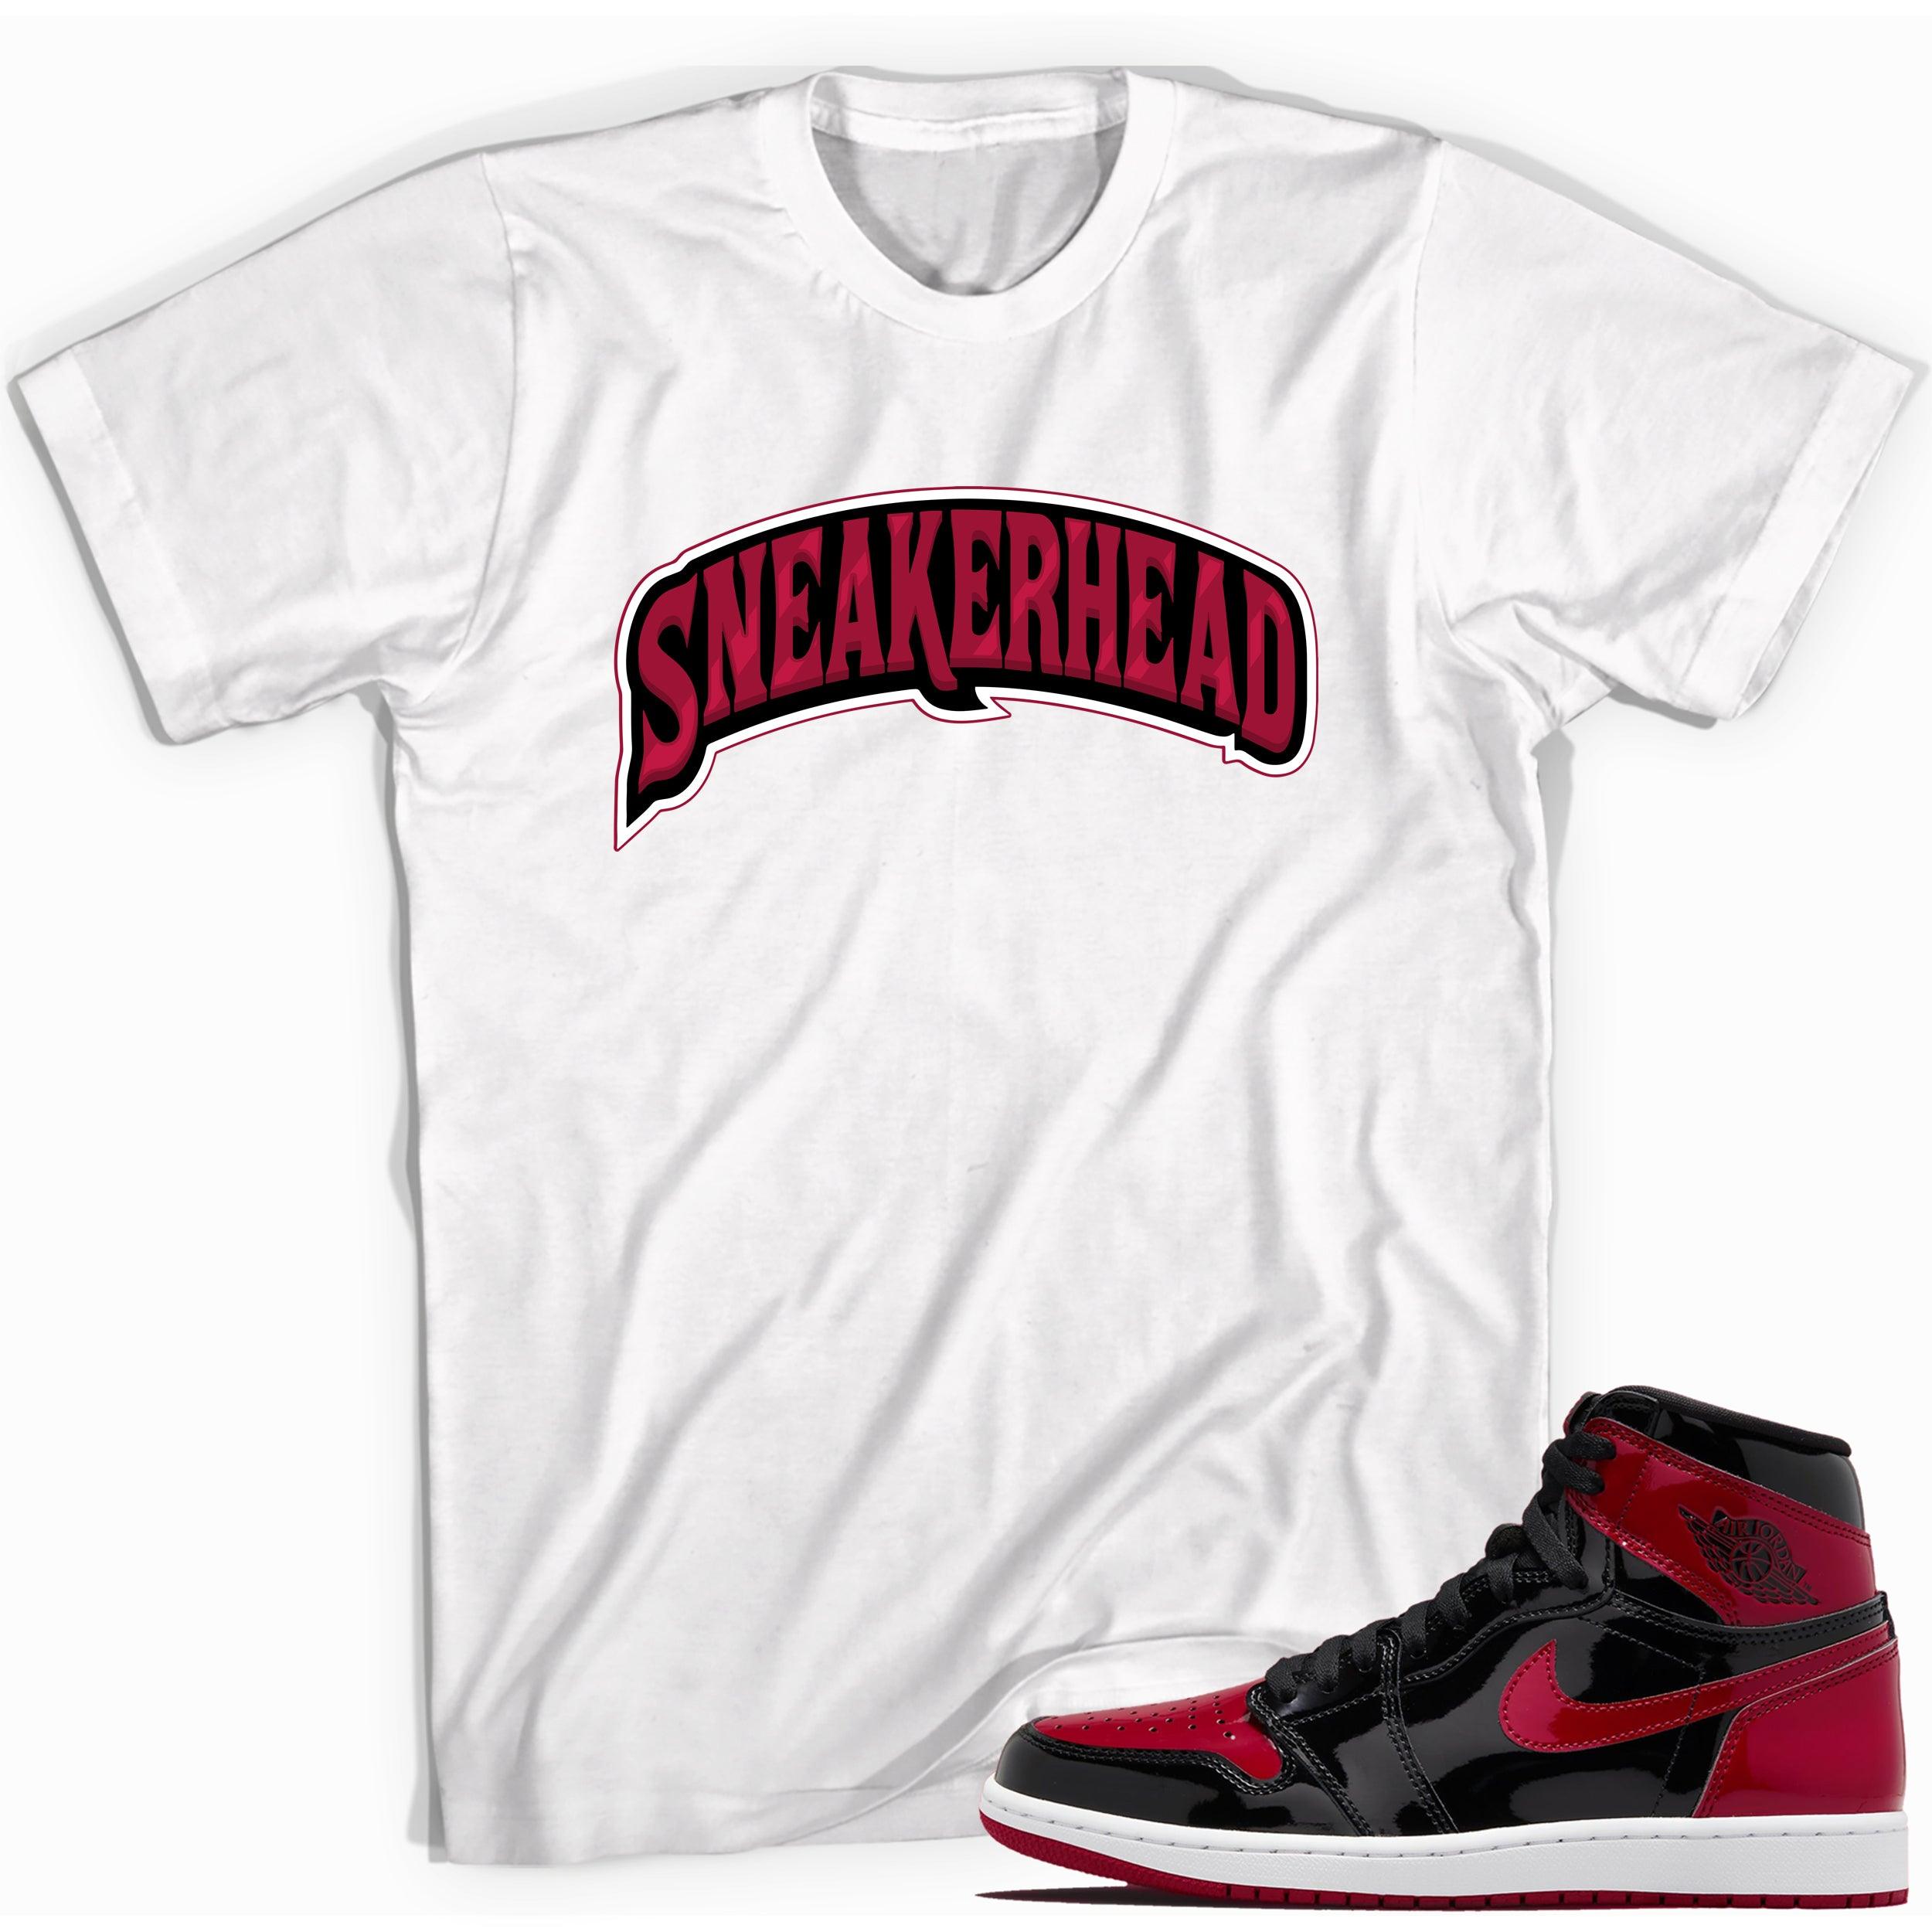 White Sneakerhead Shirt for Jordan 1s Patent Bred photo